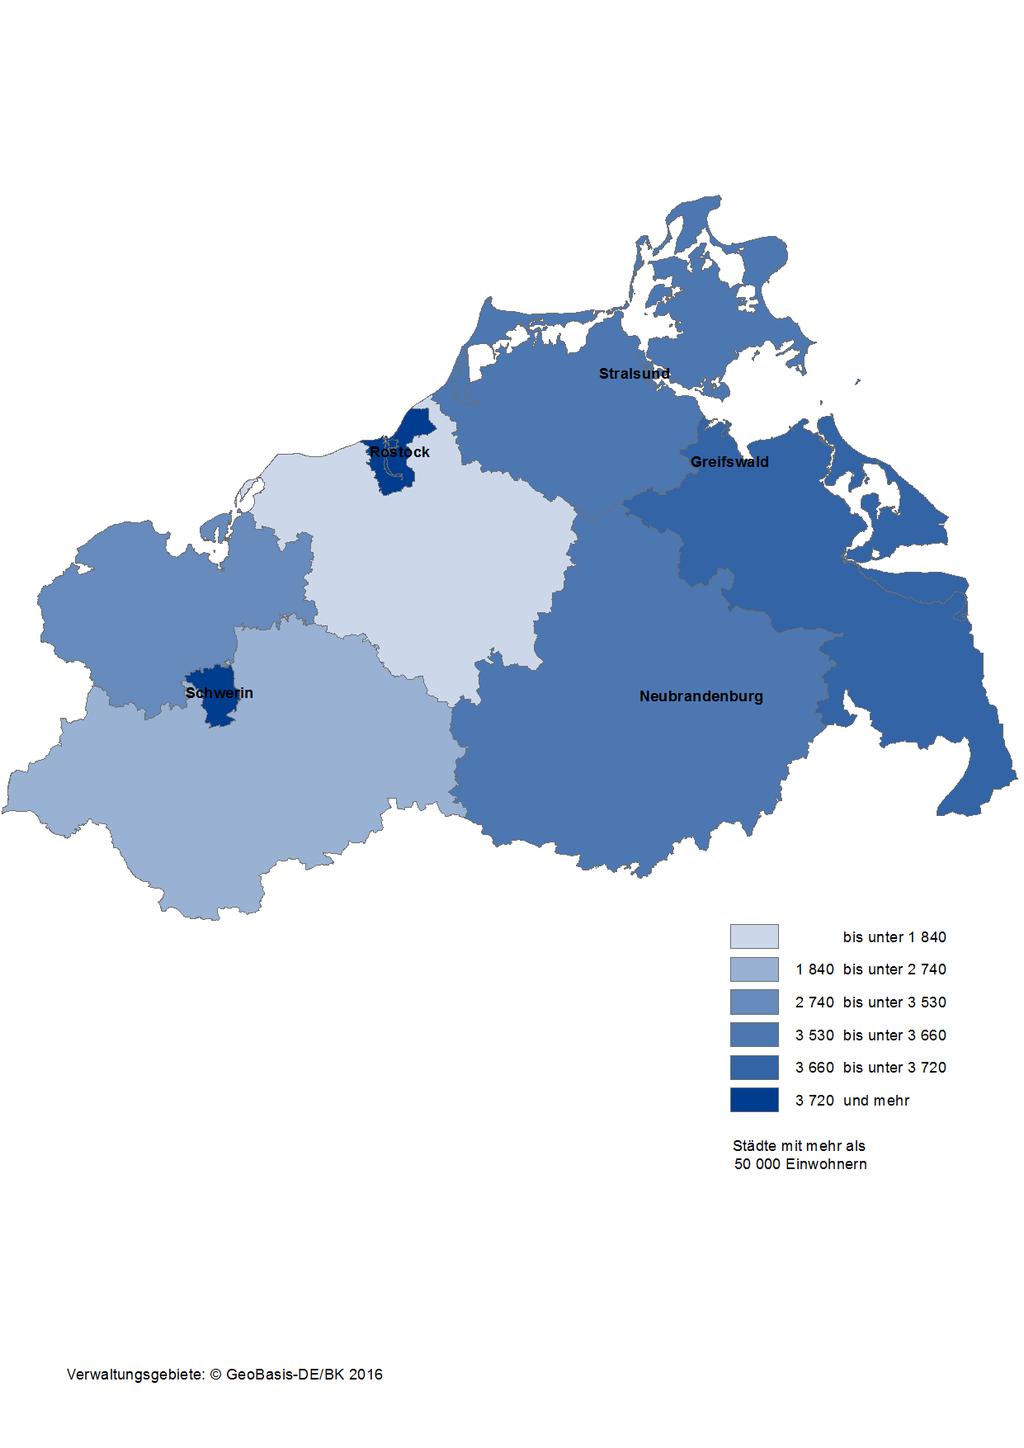 Karte 9: Integrierte kommunale Schulden der Kreisgebiete und kreisfreien Städte in Mecklenburg-Vorpommern am 31.12.